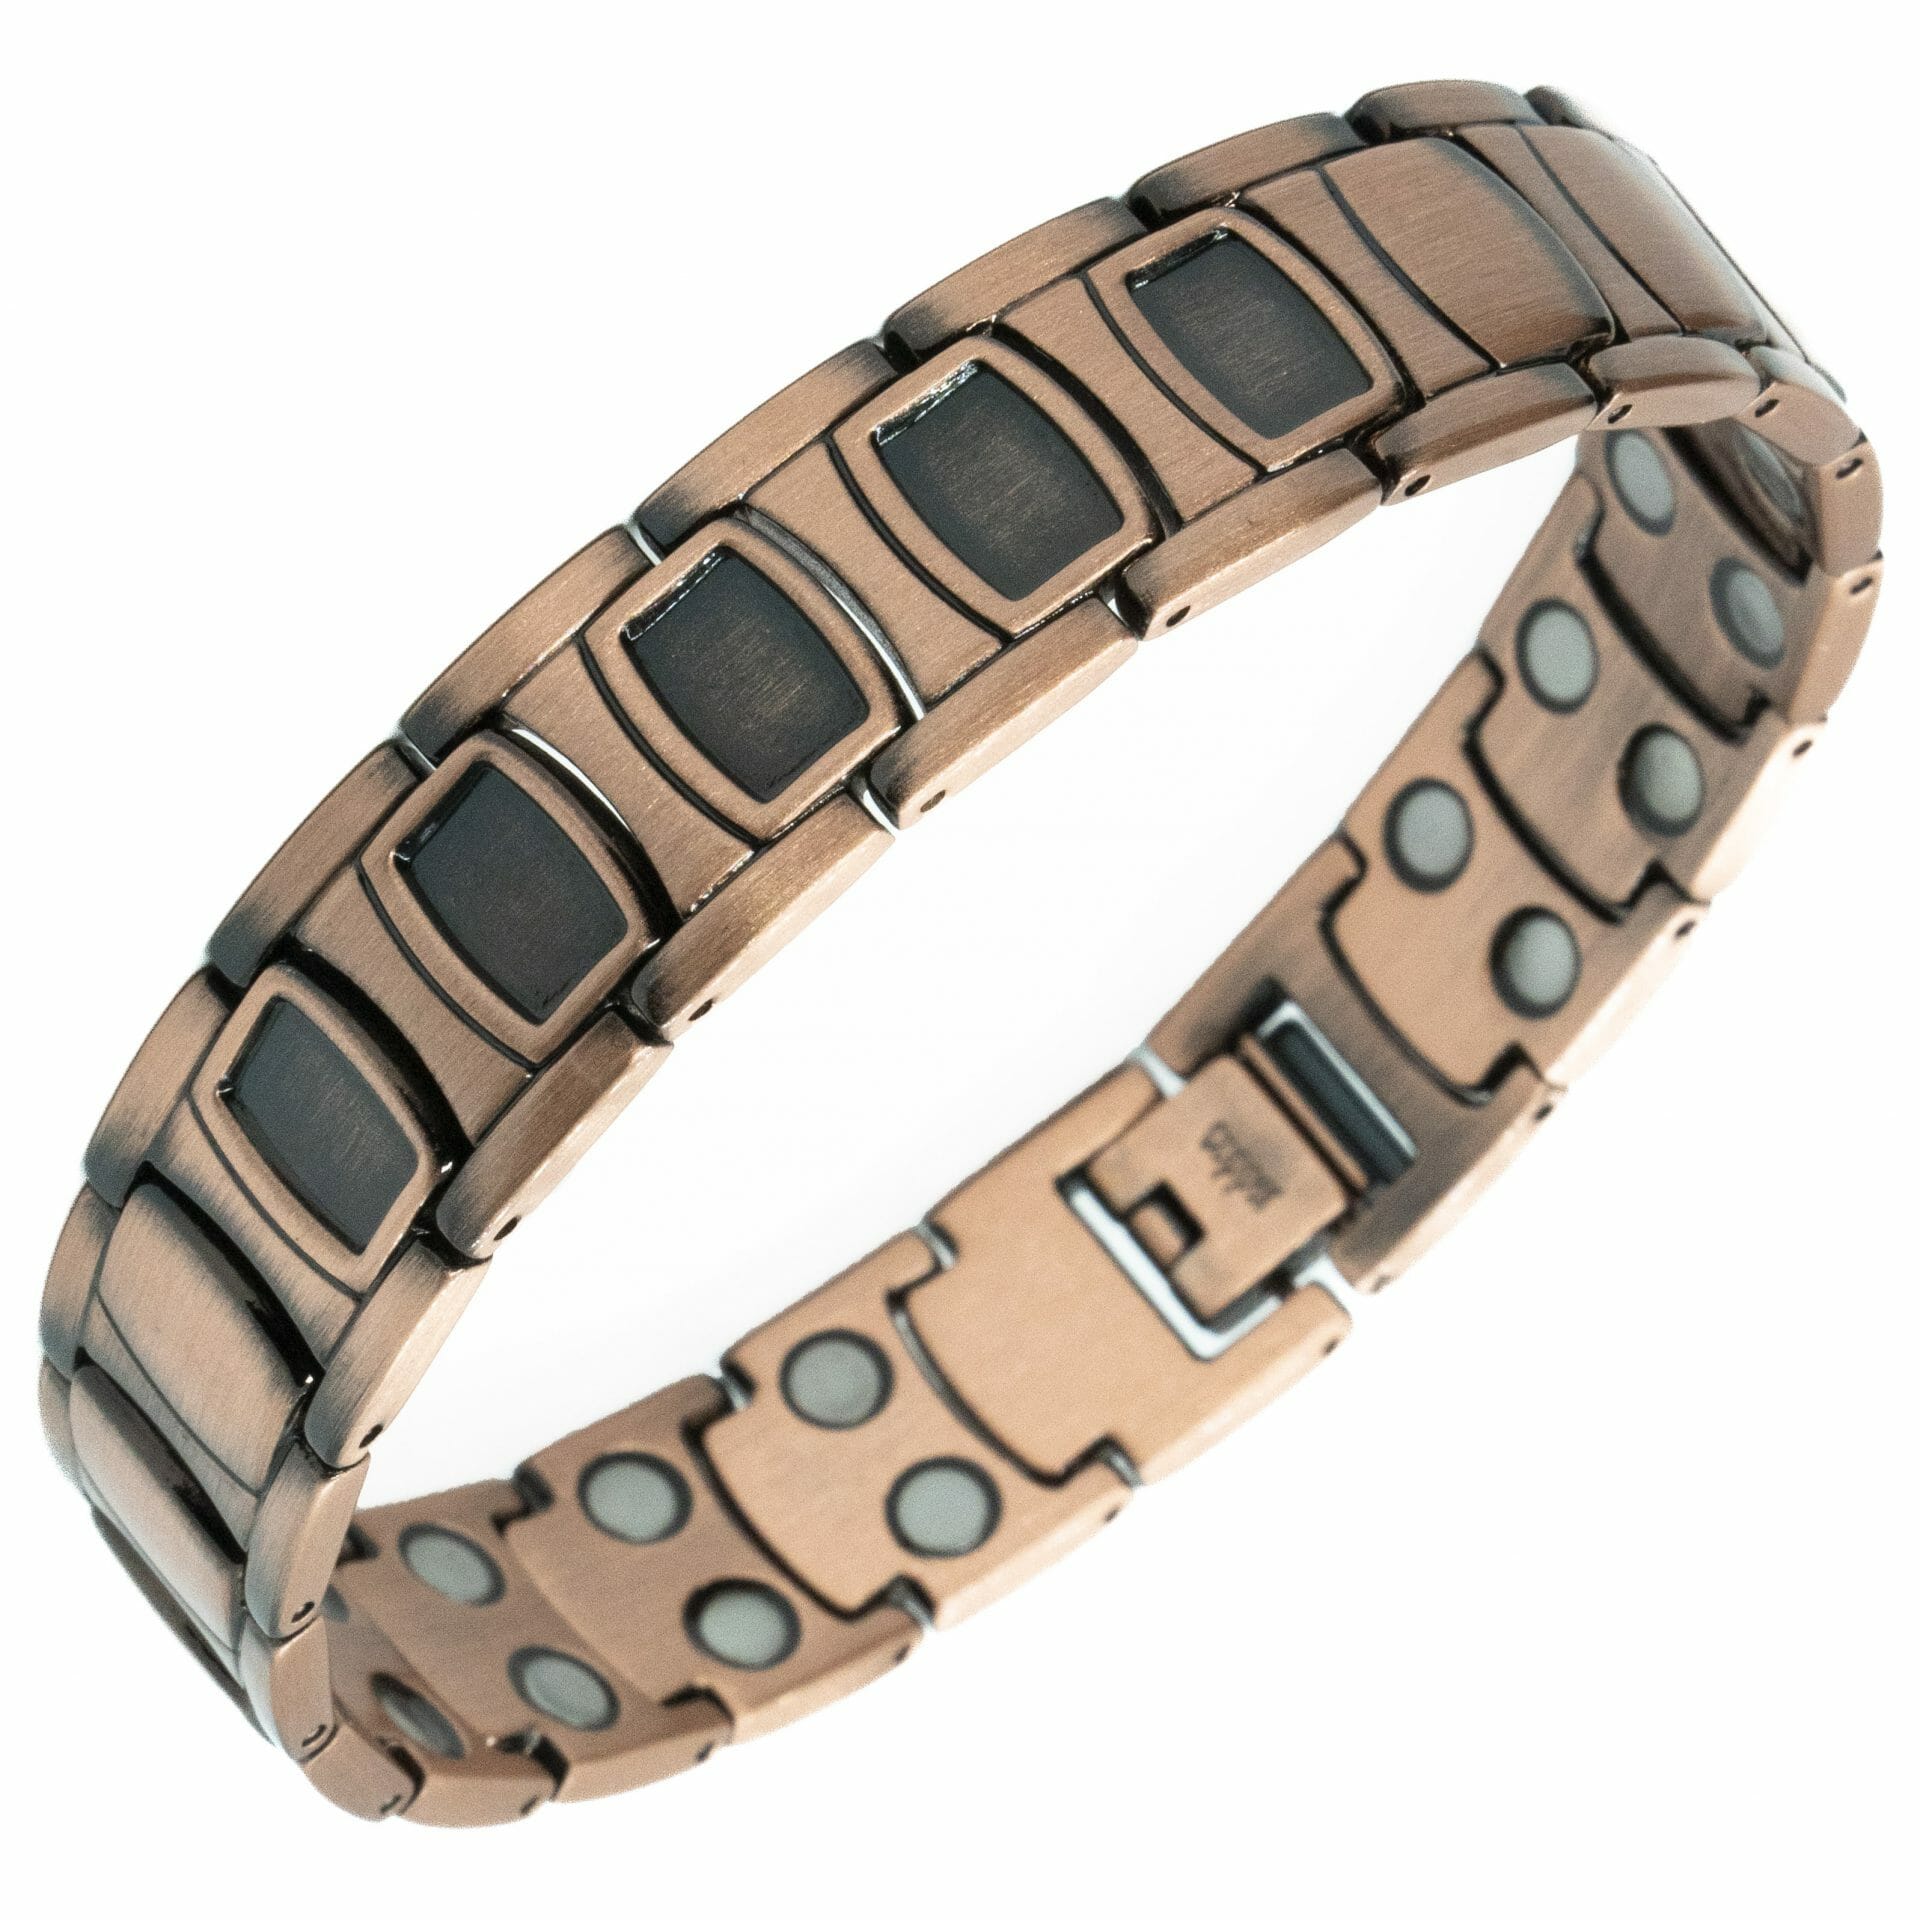 Copper Magnet Bracelet - Five Black